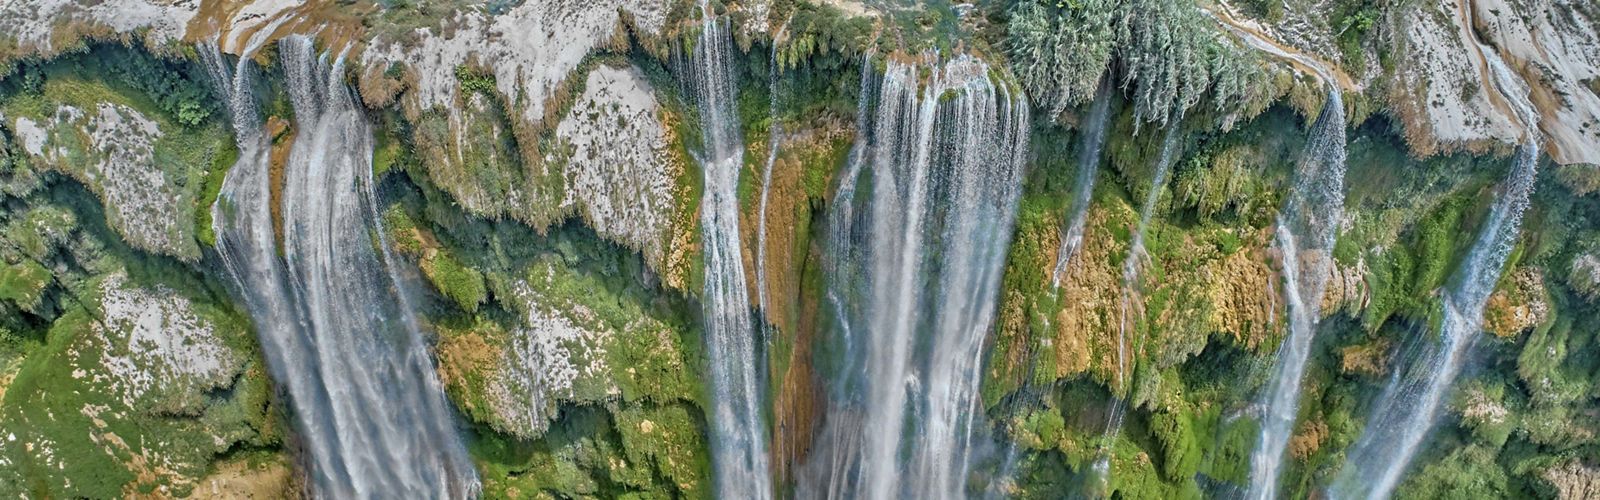 La cascada de Tamul es un salto de agua de México, el salto de agua más grande del estado de San Luis Potosí, México